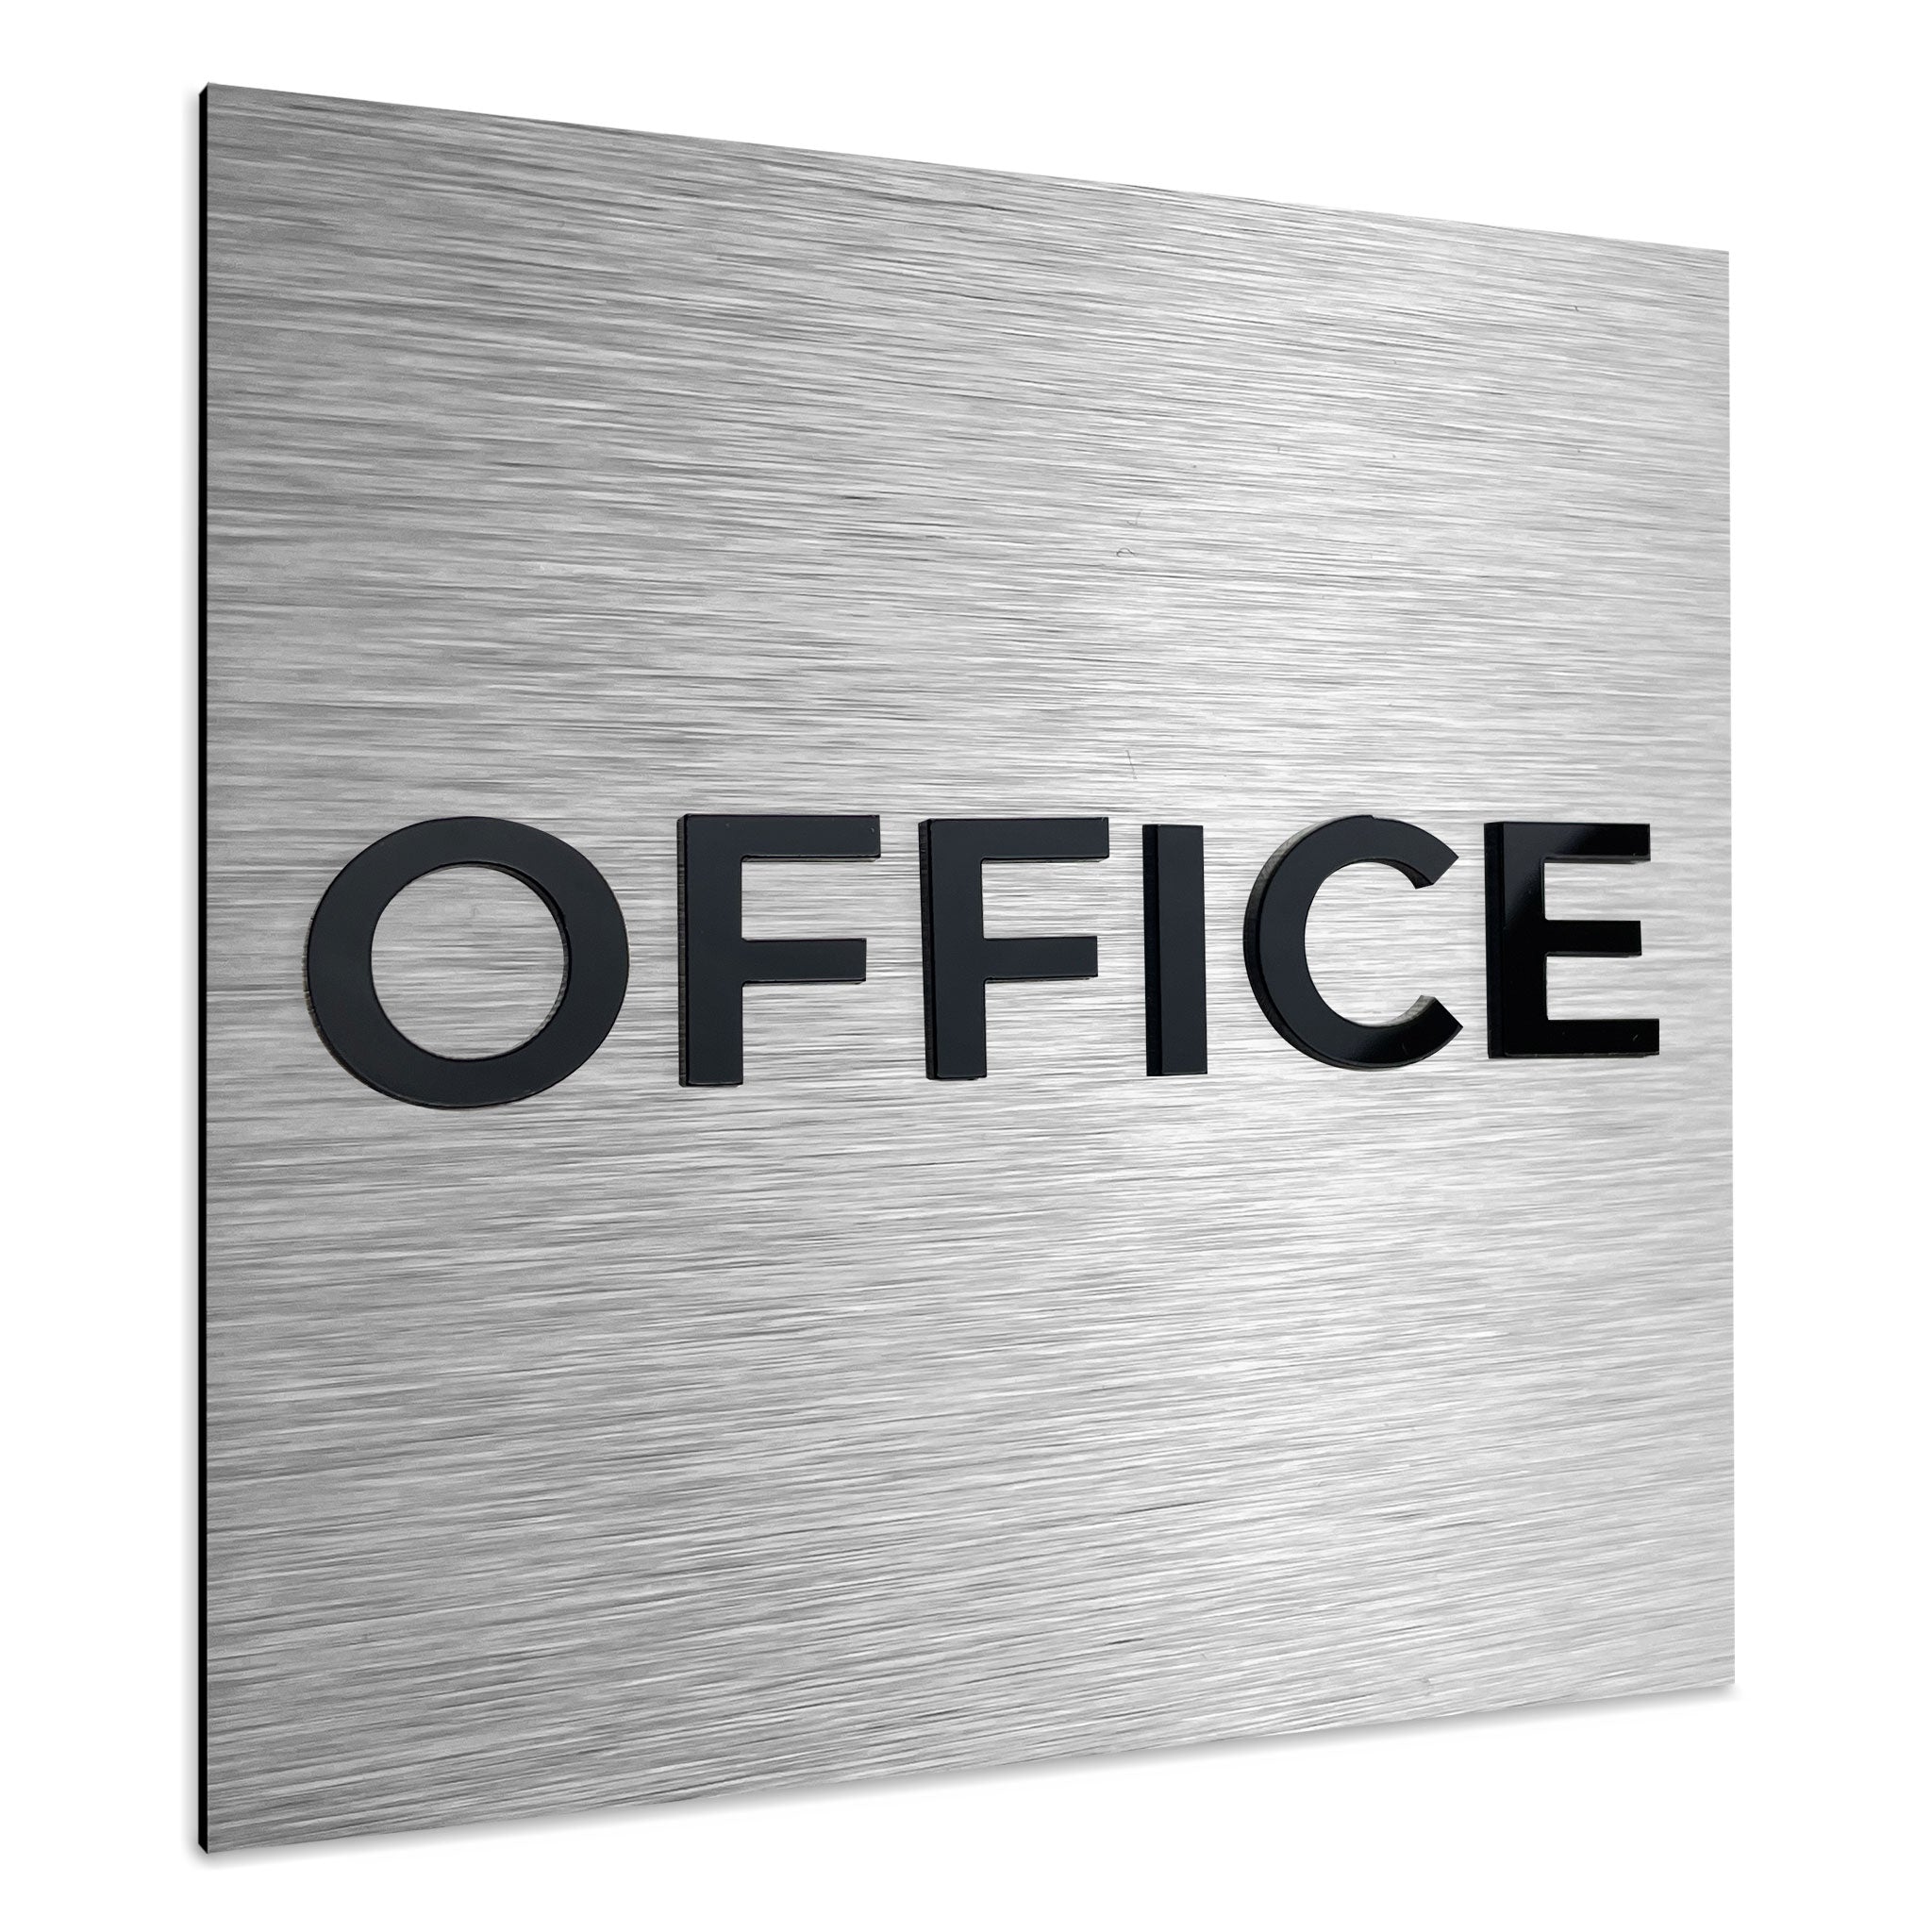 OFFICE SIGN - ALUMADESIGNCO Door Signs - Custom Door Signs For Business & Office